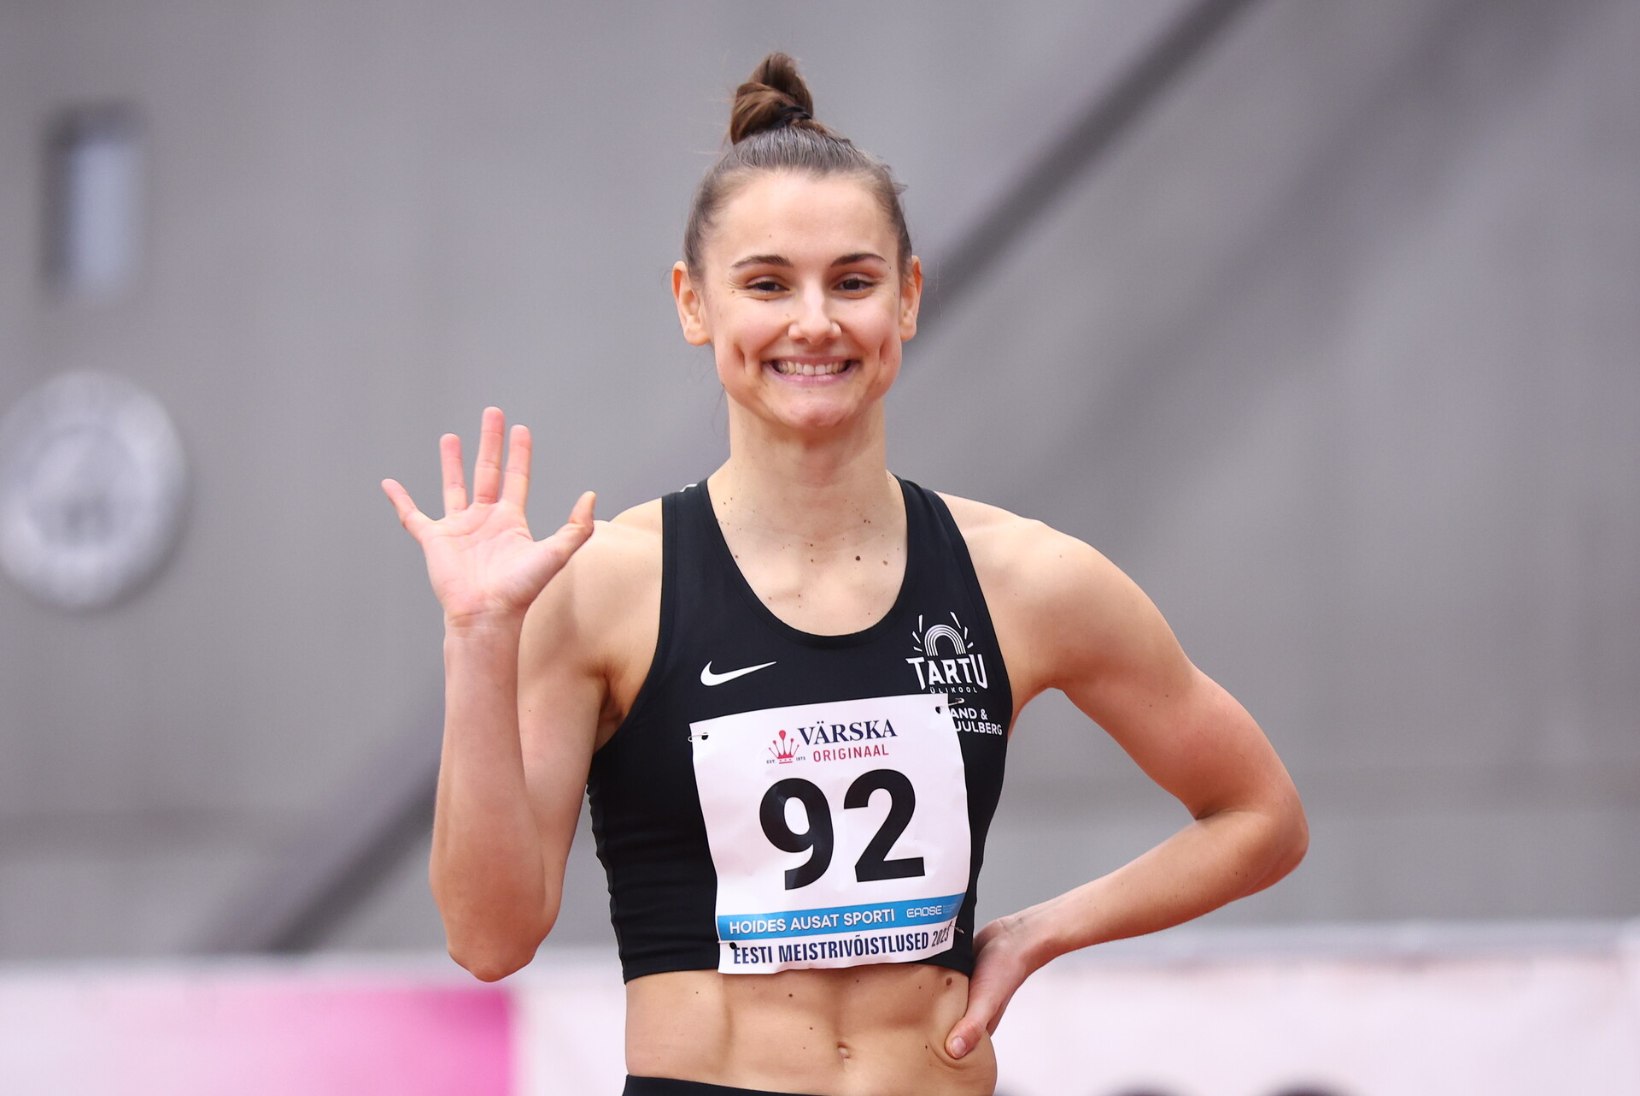 Eesti meistrivõistlustel särasid sprinterid. Kirsi tordile pani vägeva Eesti rekordi püstitanud Diana Suumann!